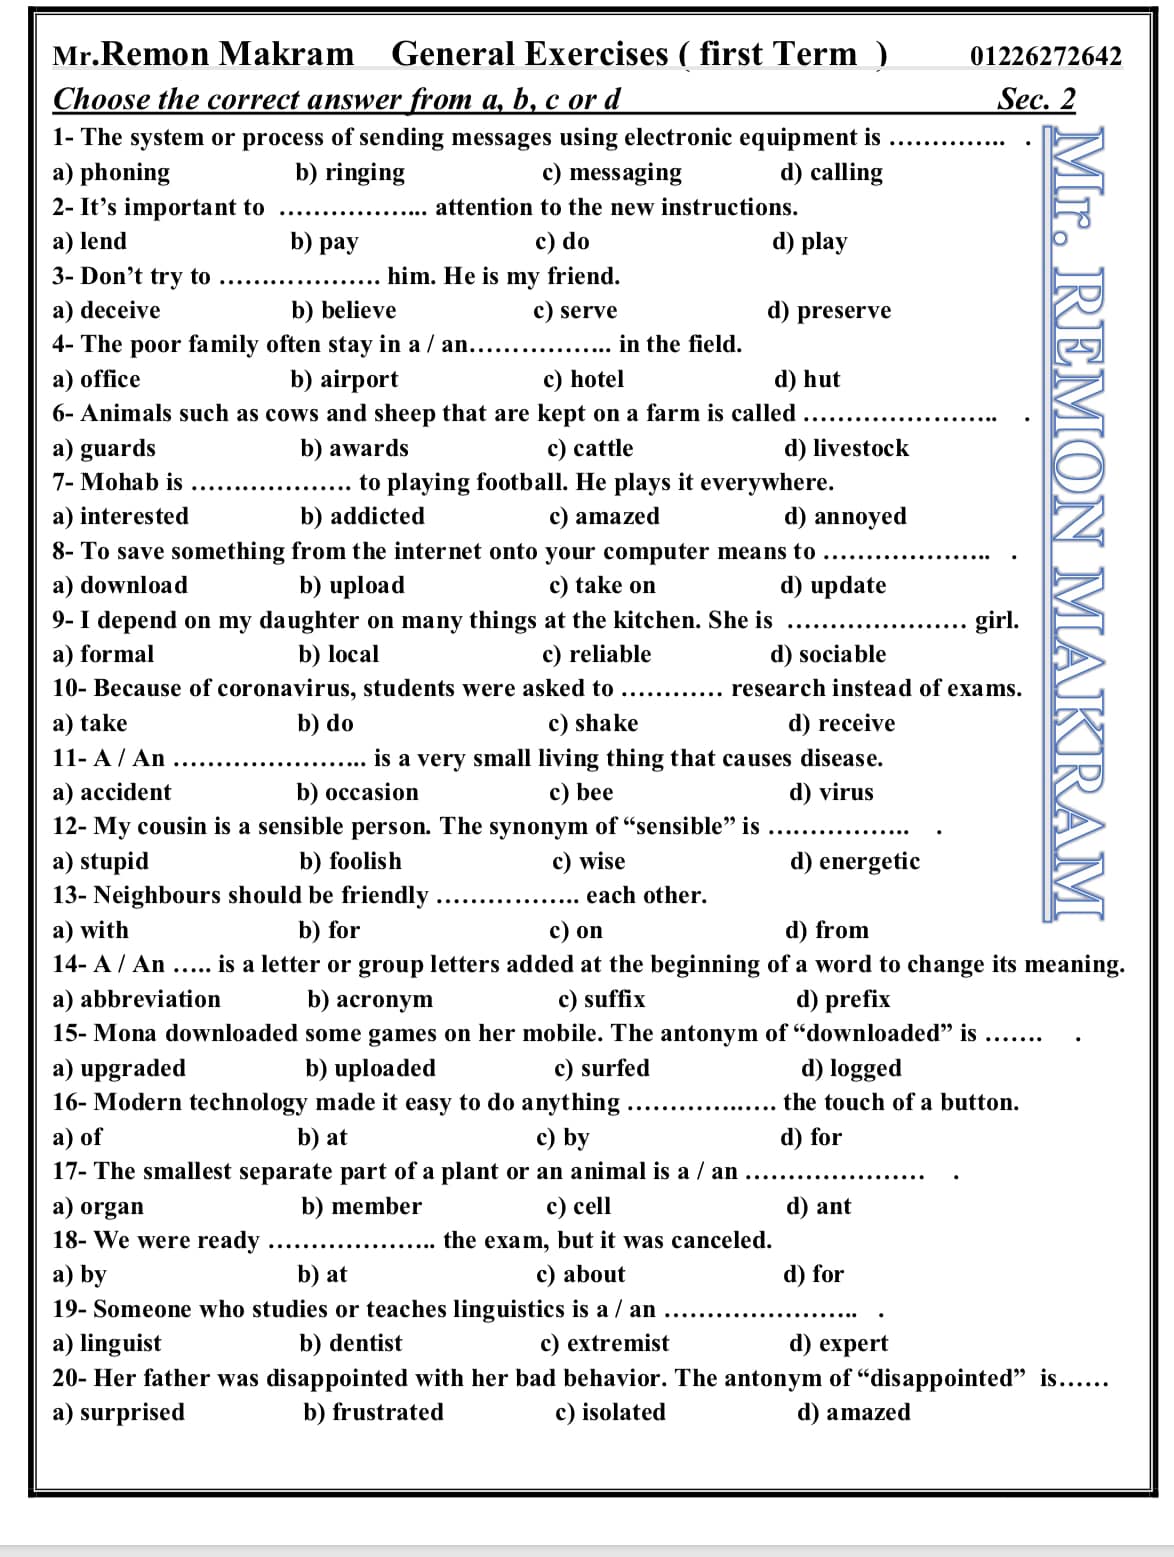 لغة انجليزية | كل الأجزاء الاختيارية للمراجعة النهائية للصف الثانى الثانوى